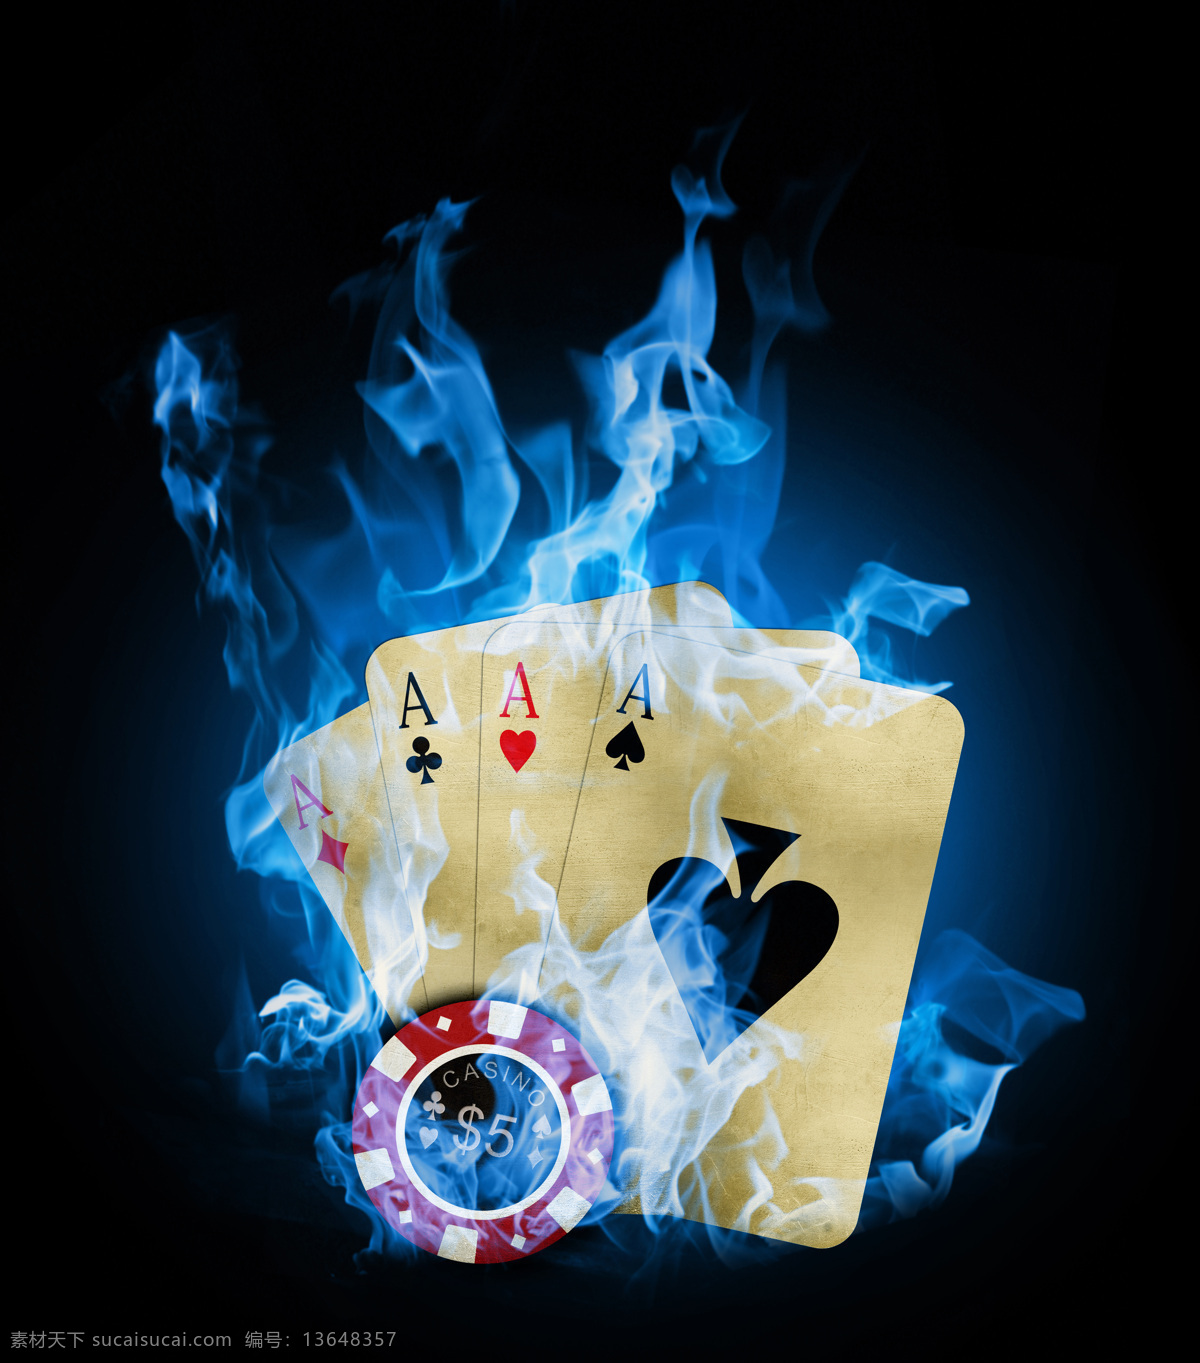 蓝色 火焰 扑克 火焰扑克 赌博 燃烧的火焰 扑克牌 高清图片 蓝色火焰 火焰图片 生活百科